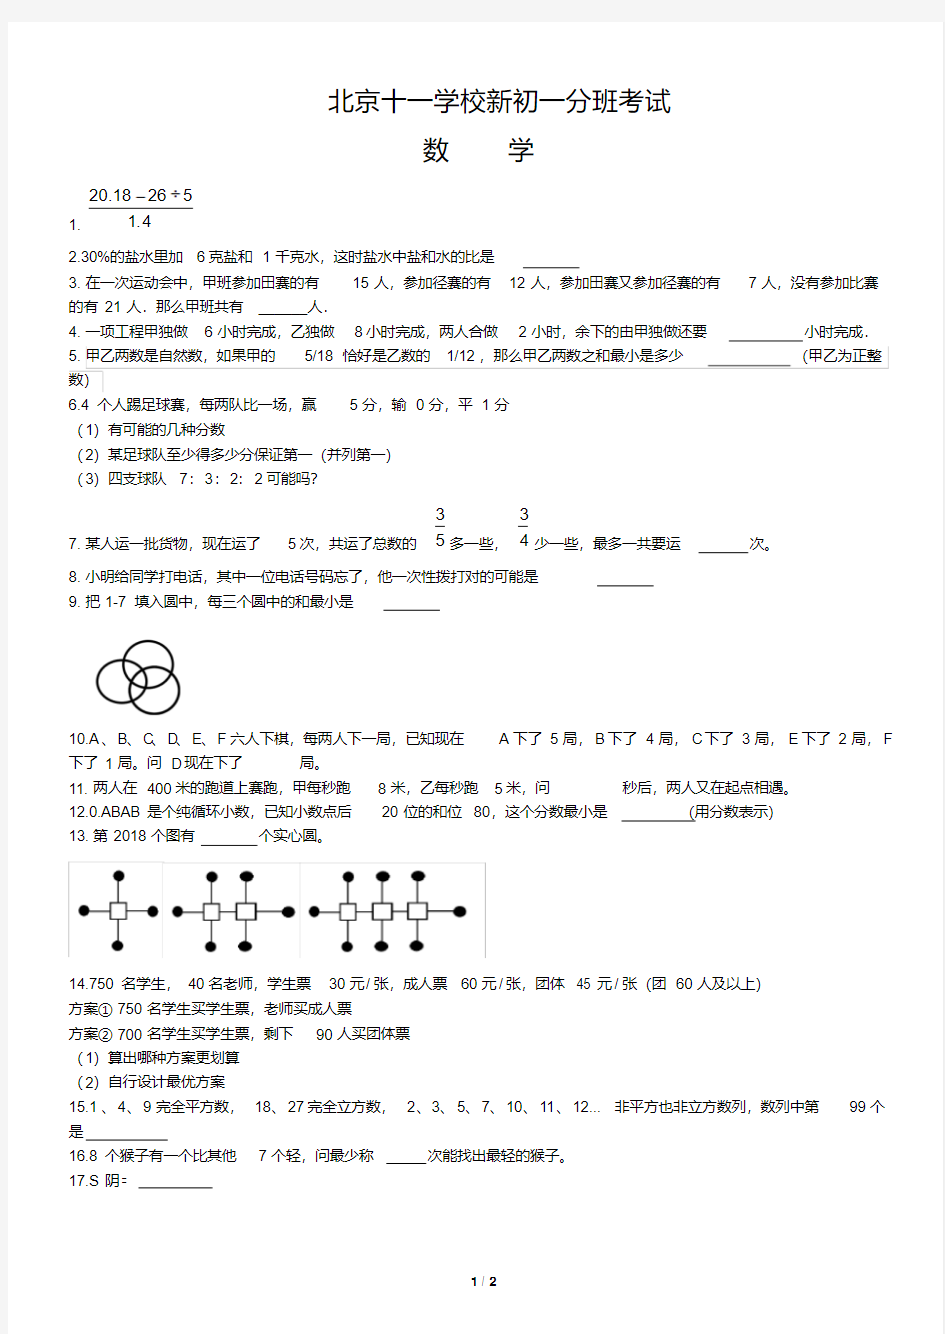 【小升初】北京十一学校新初一分班考试数学试卷